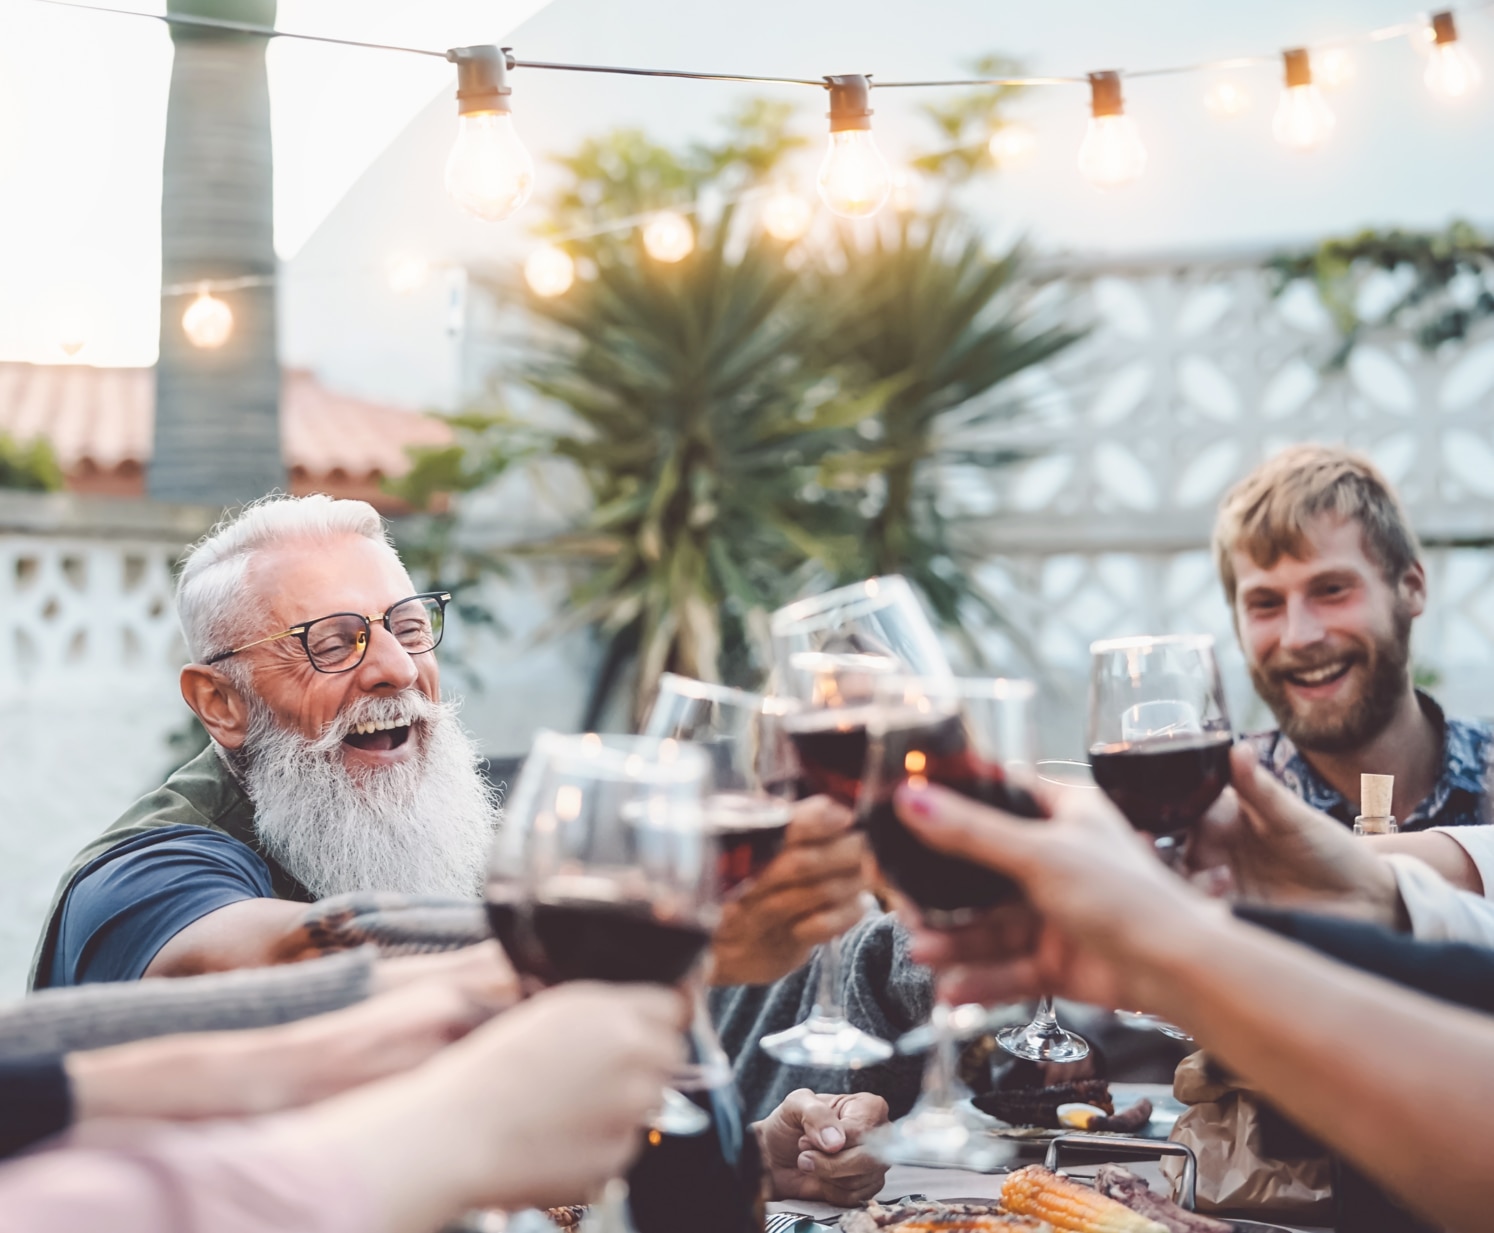 Lykkelig familie spiser udendørs og skåler med rødvinsglas – mennesker i forskellige aldre og etnicitet har det sjovt ved en grillfest – weekendaktiviteter med unge og ældre forældre